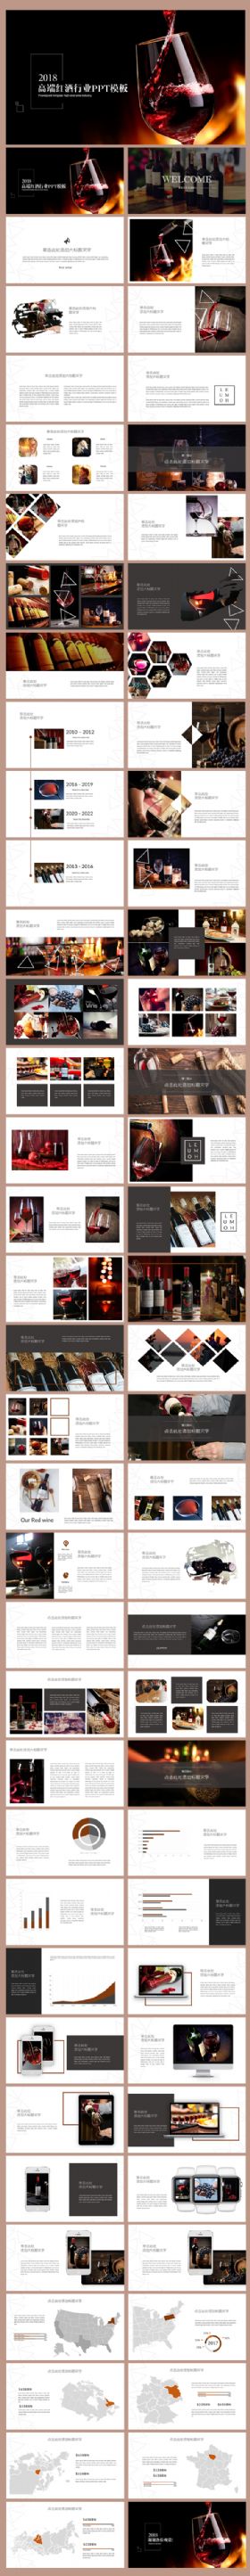 时尚高端葡萄酒红酒品牌介绍PPT模板